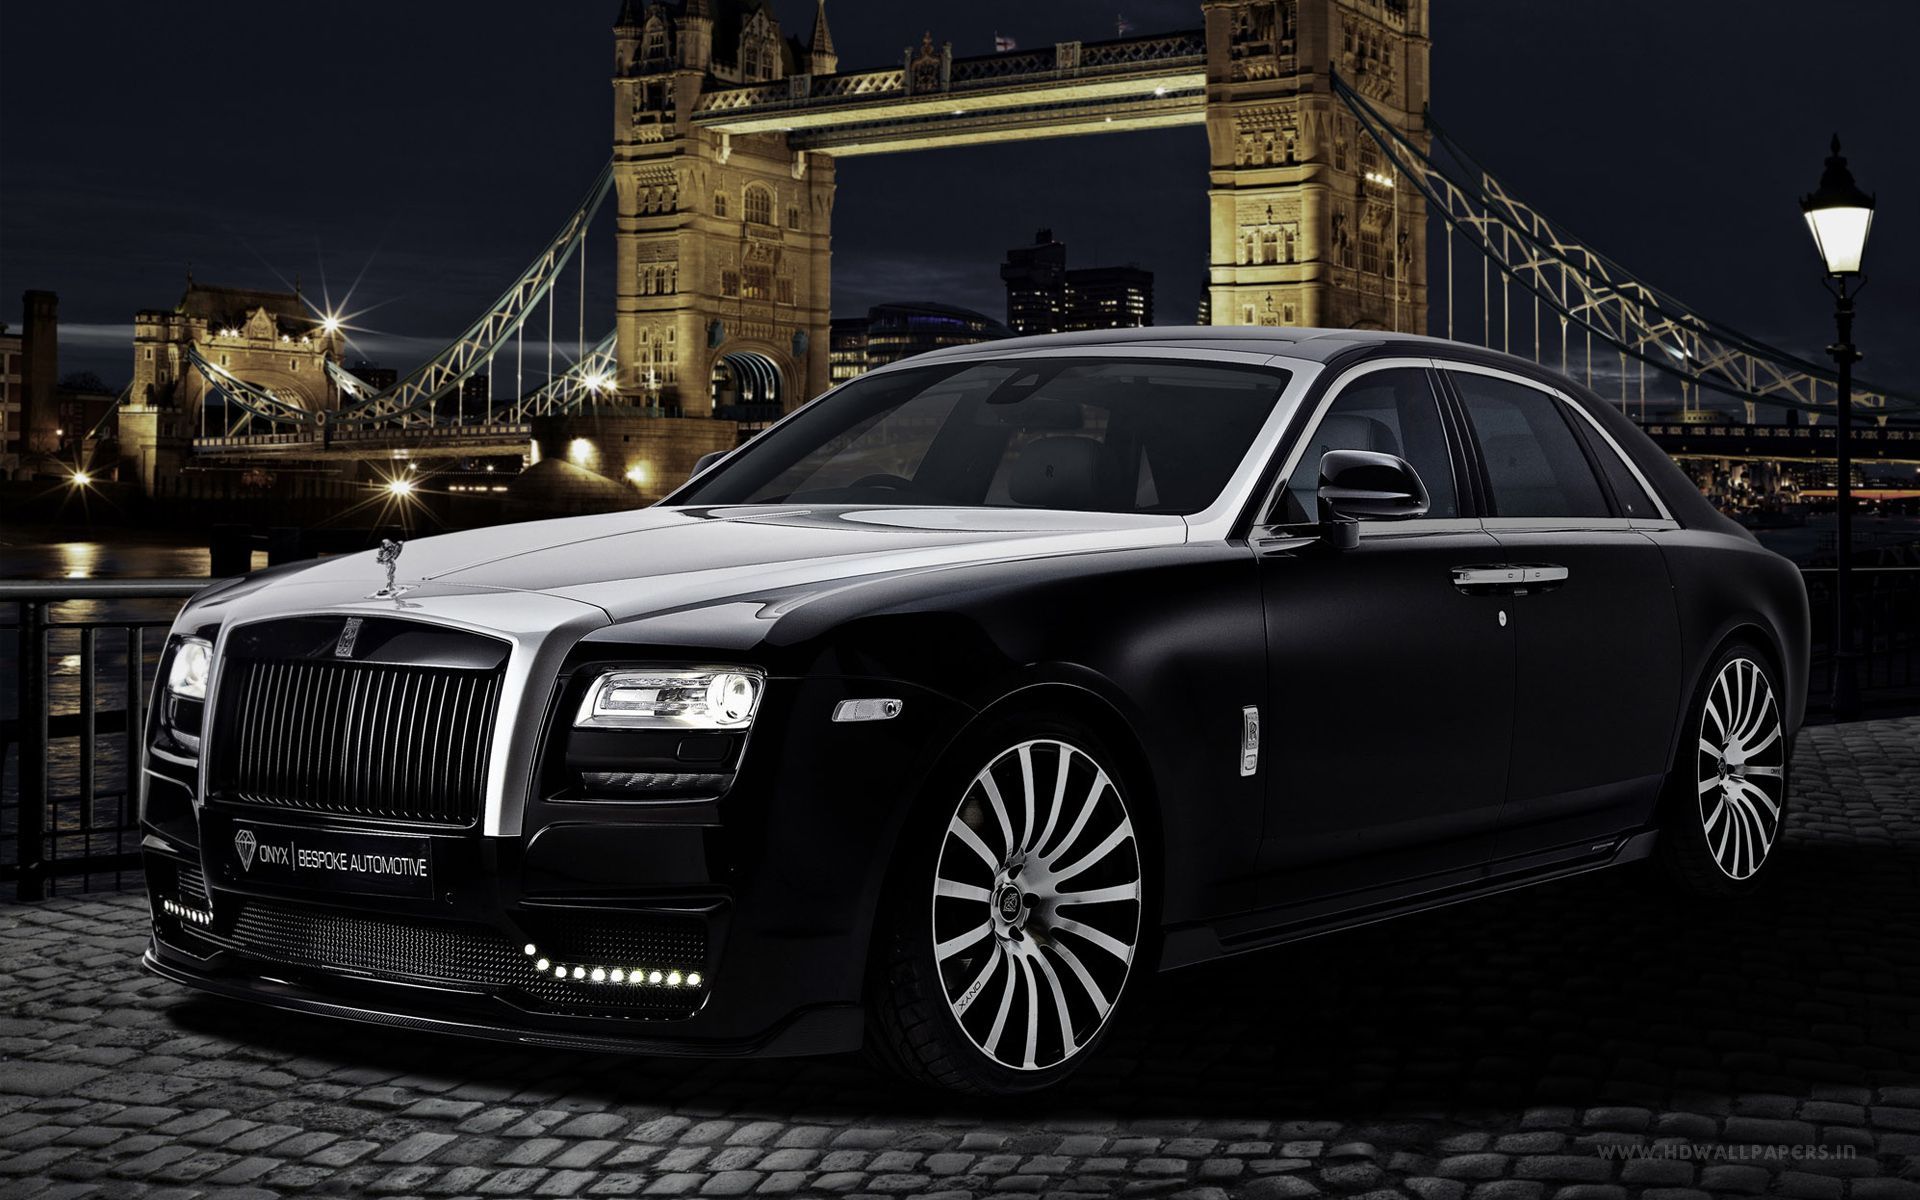 Rolls Royce Wallpapers | Rolls Royce Car Pictures | Rolls Royce HD ...